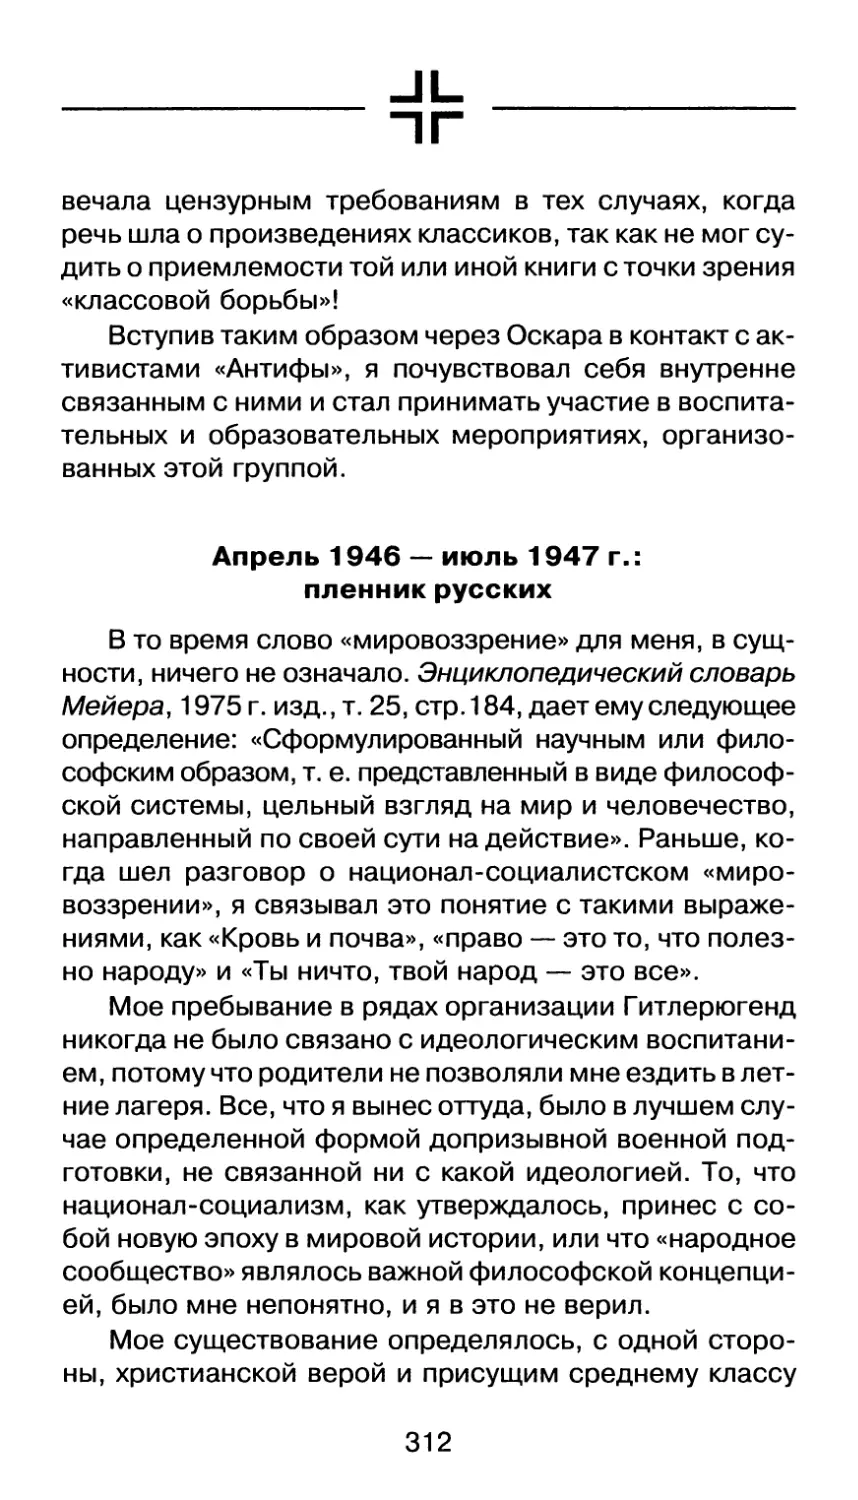 Апрель 1946 — июль 1947 г.: пленник русских